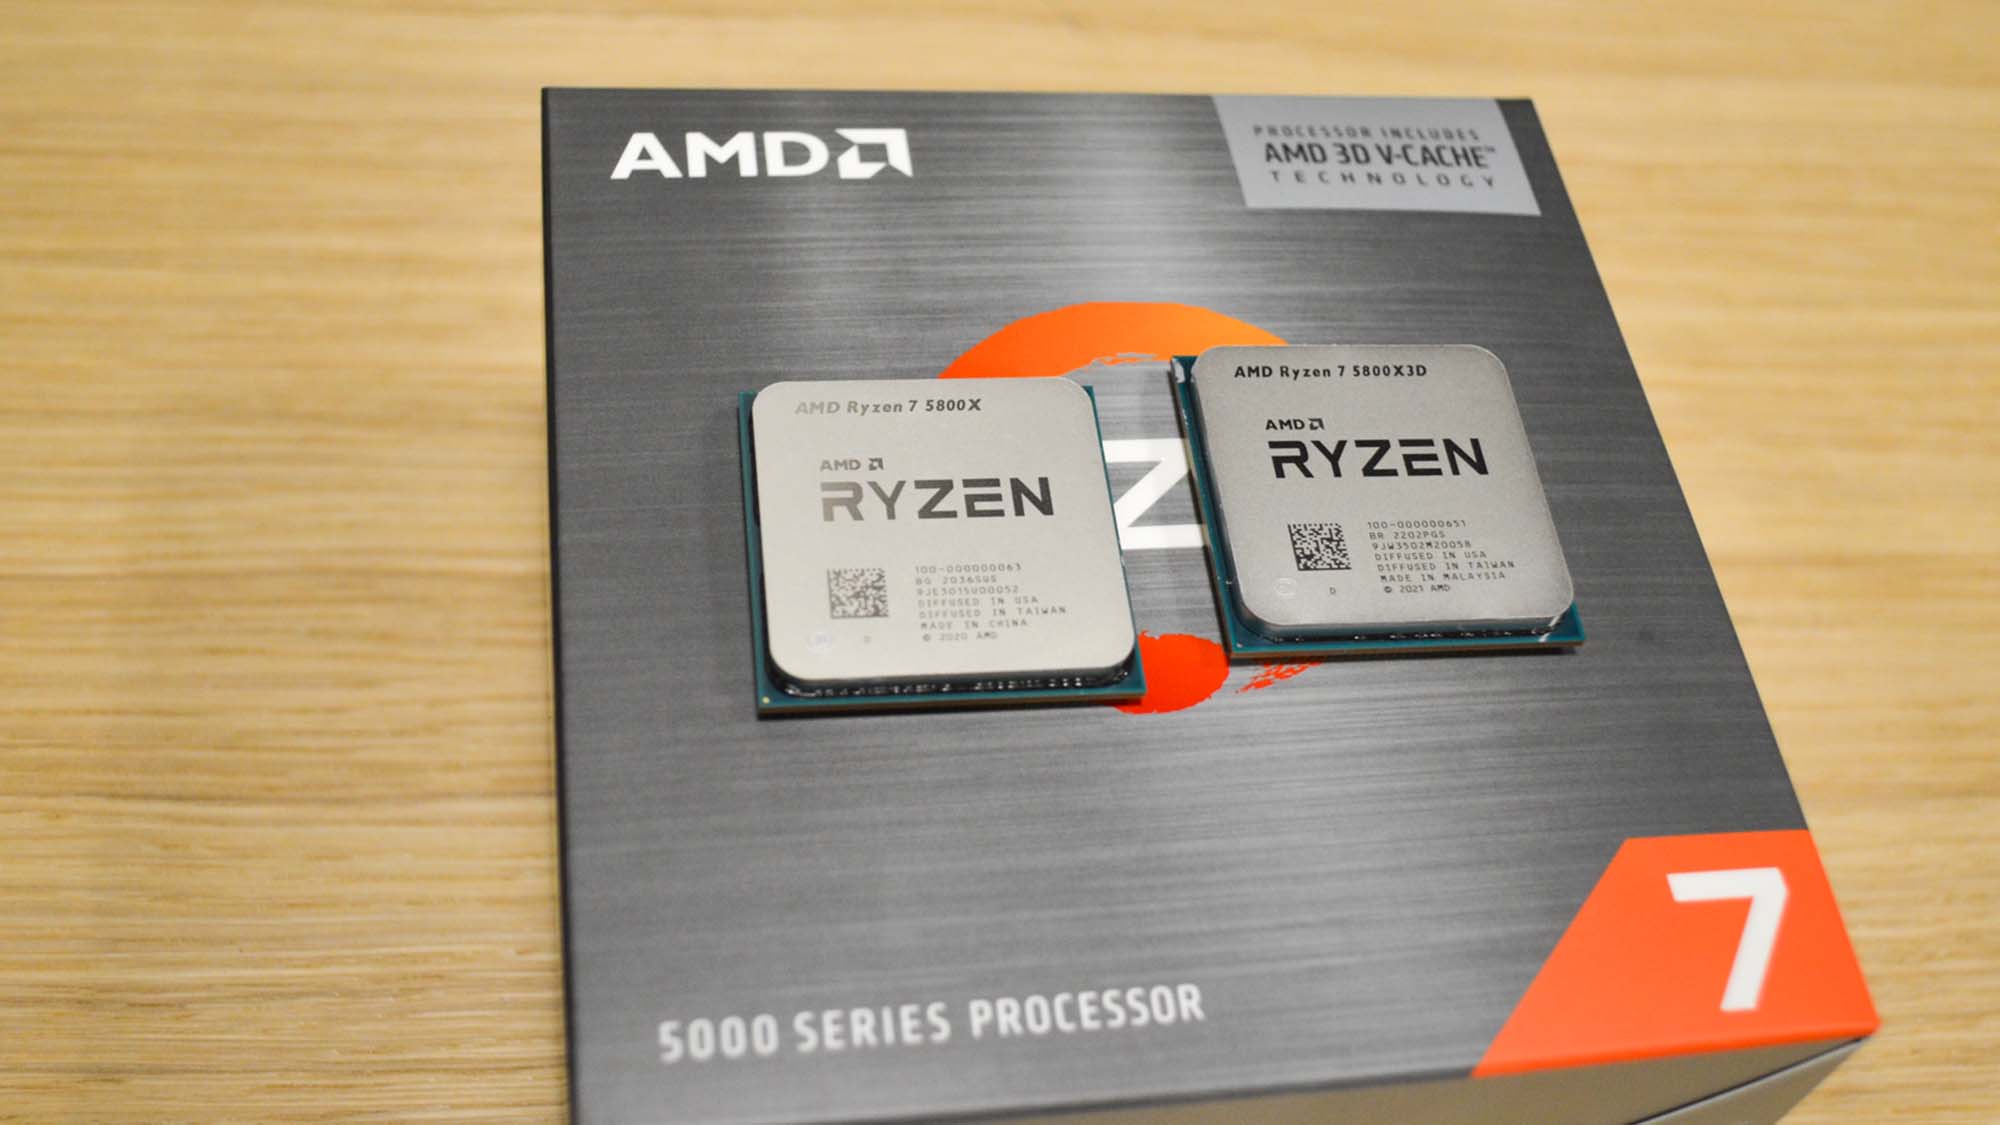 AMD Ryzen 7 5800X3D ja Ryzen 7 5800X vierekkäin myyntipaketin päällä